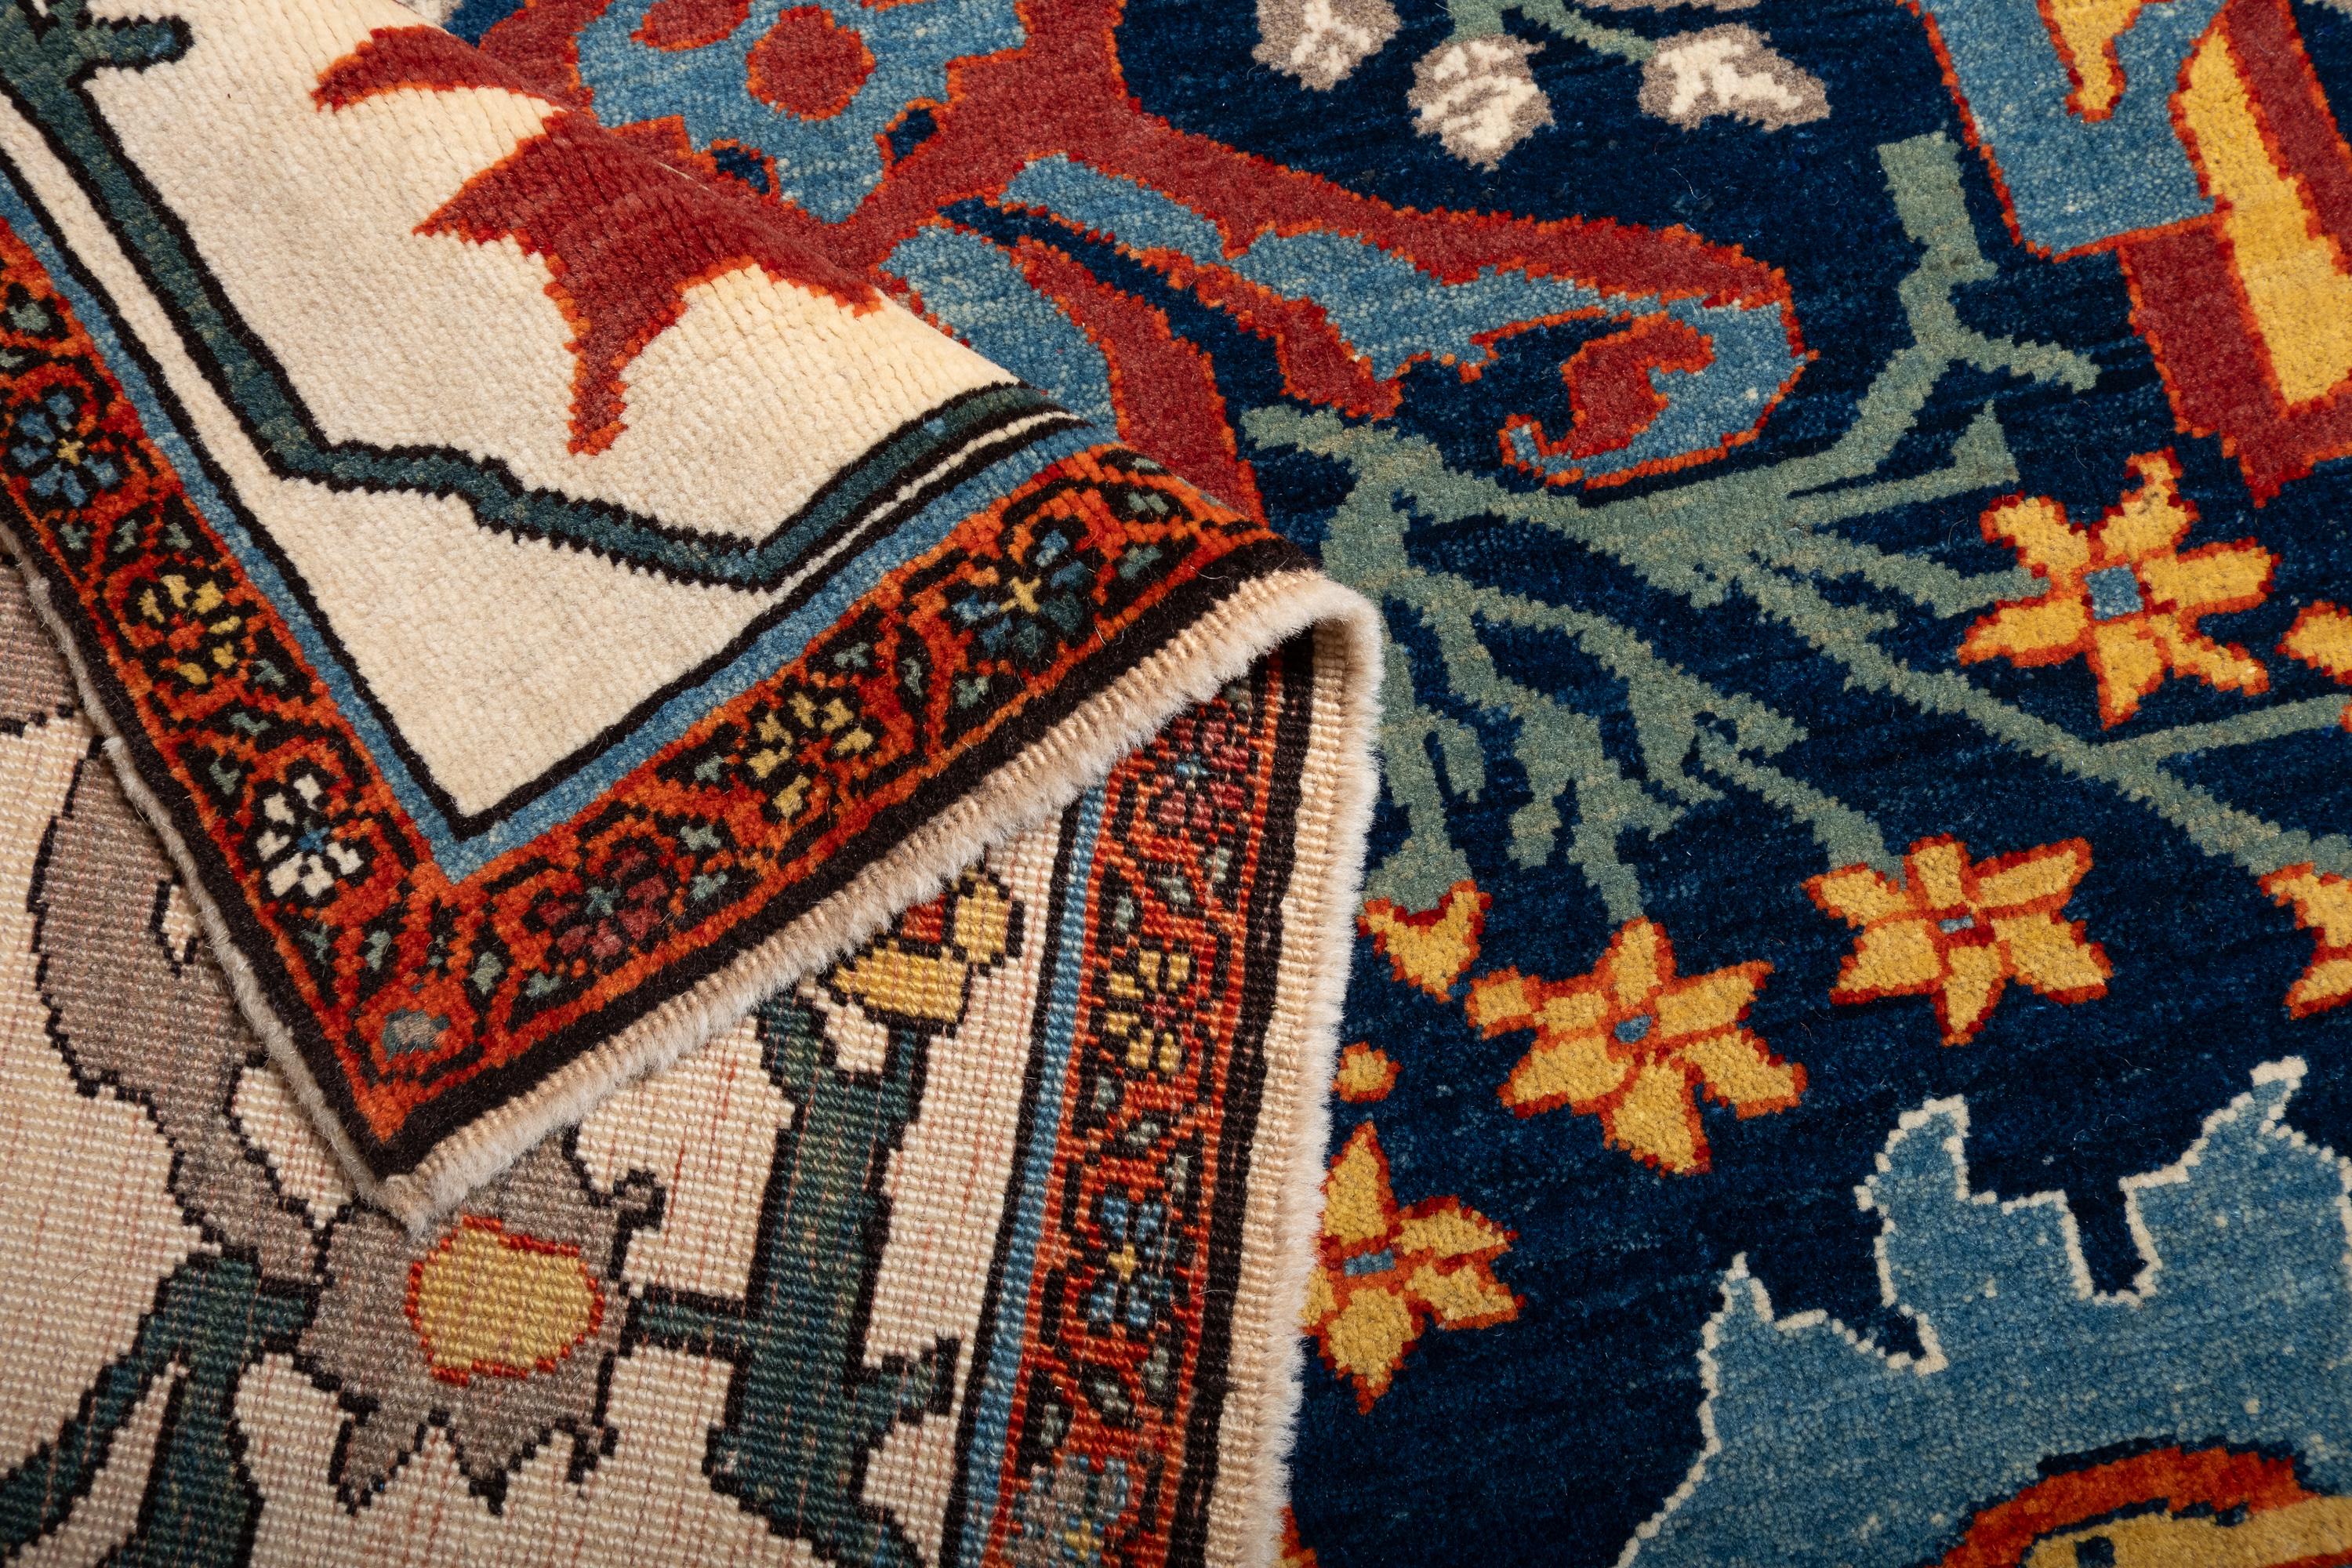 Contemporary Ararat Rugs Bidjar Rug - 19th Century Design Persian Revival Carpet Natural Dyed For Sale